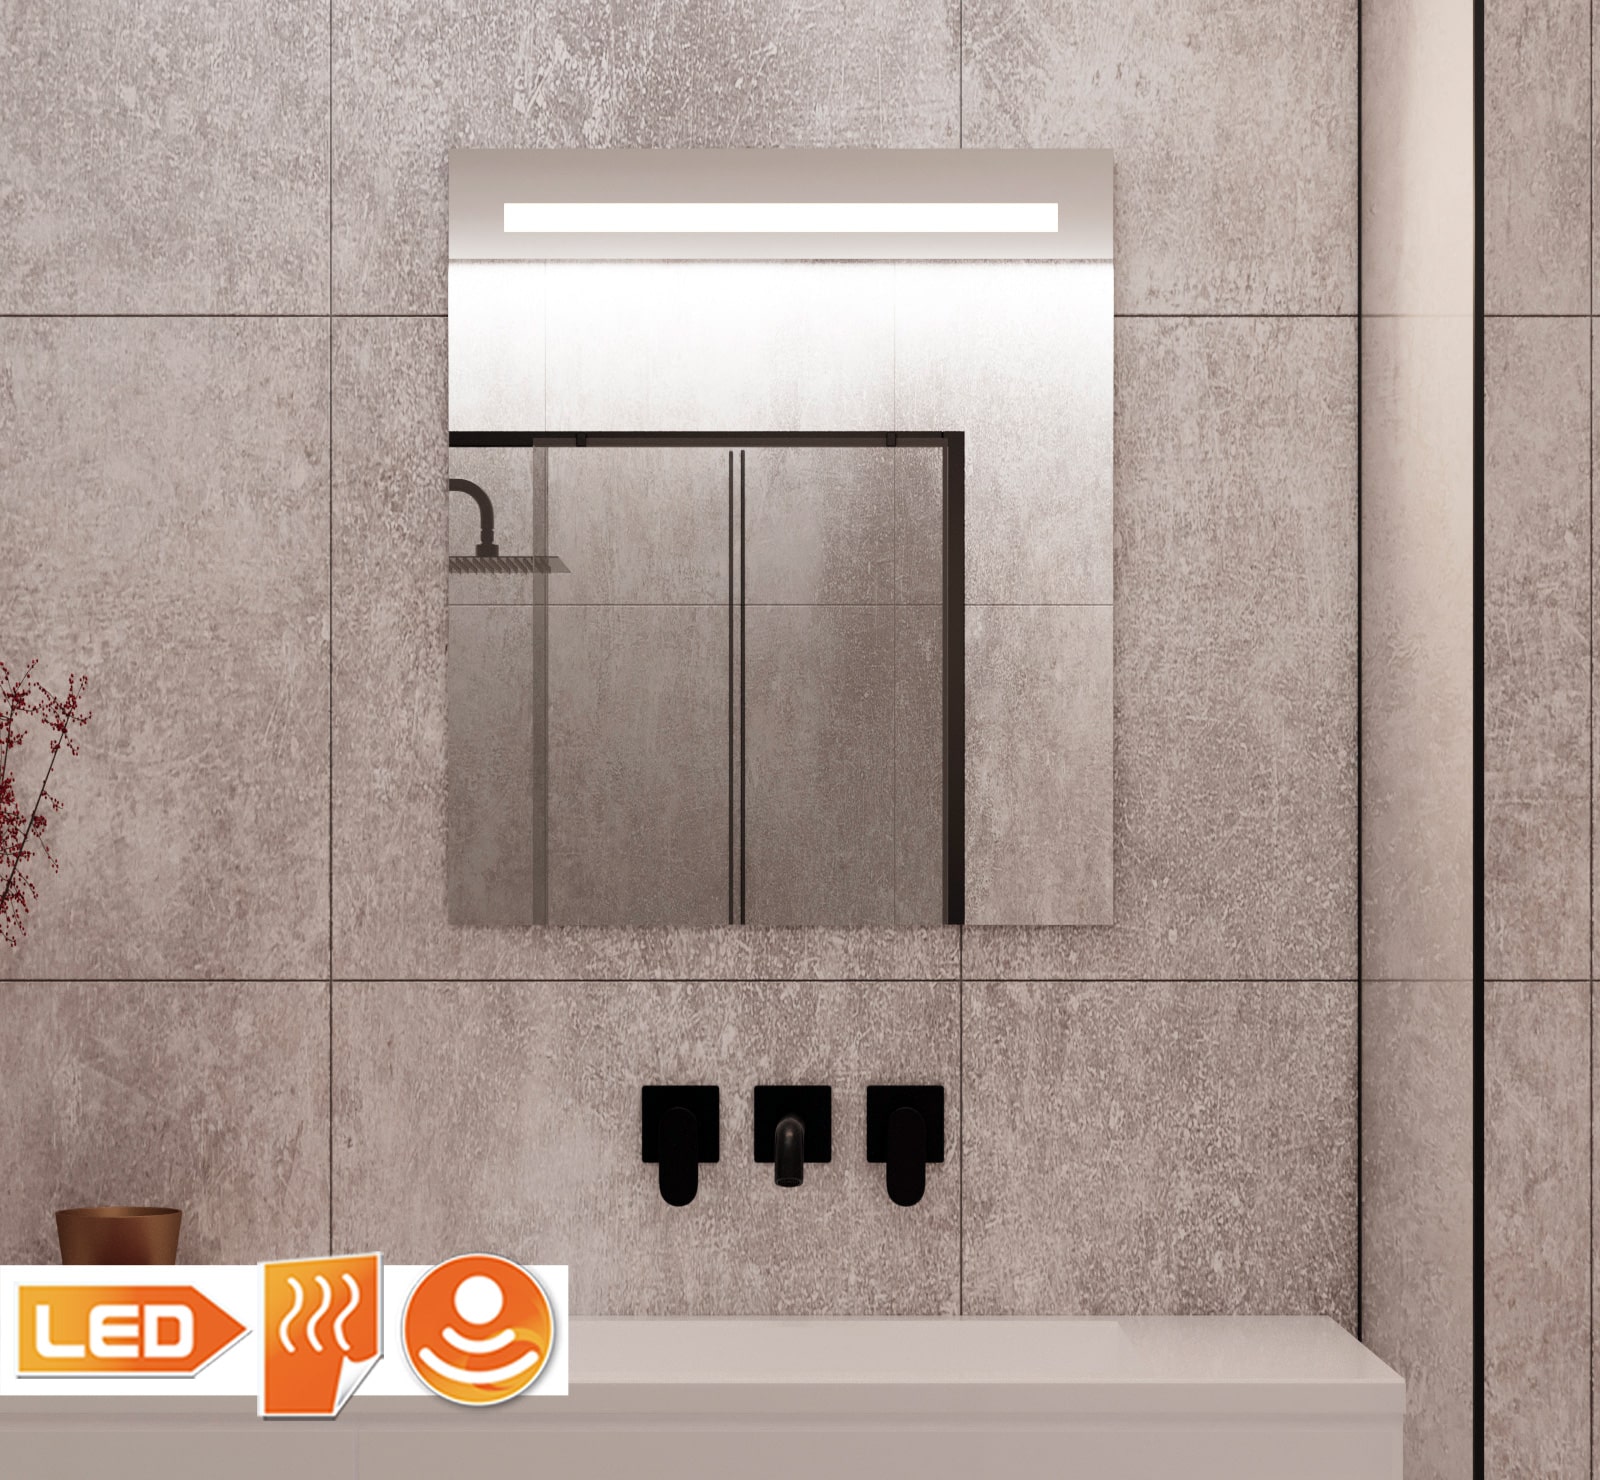 Badkamerspiegel met verlichting, verwarming, sensor en dimfunctie 60x70 cm - Designspiegels